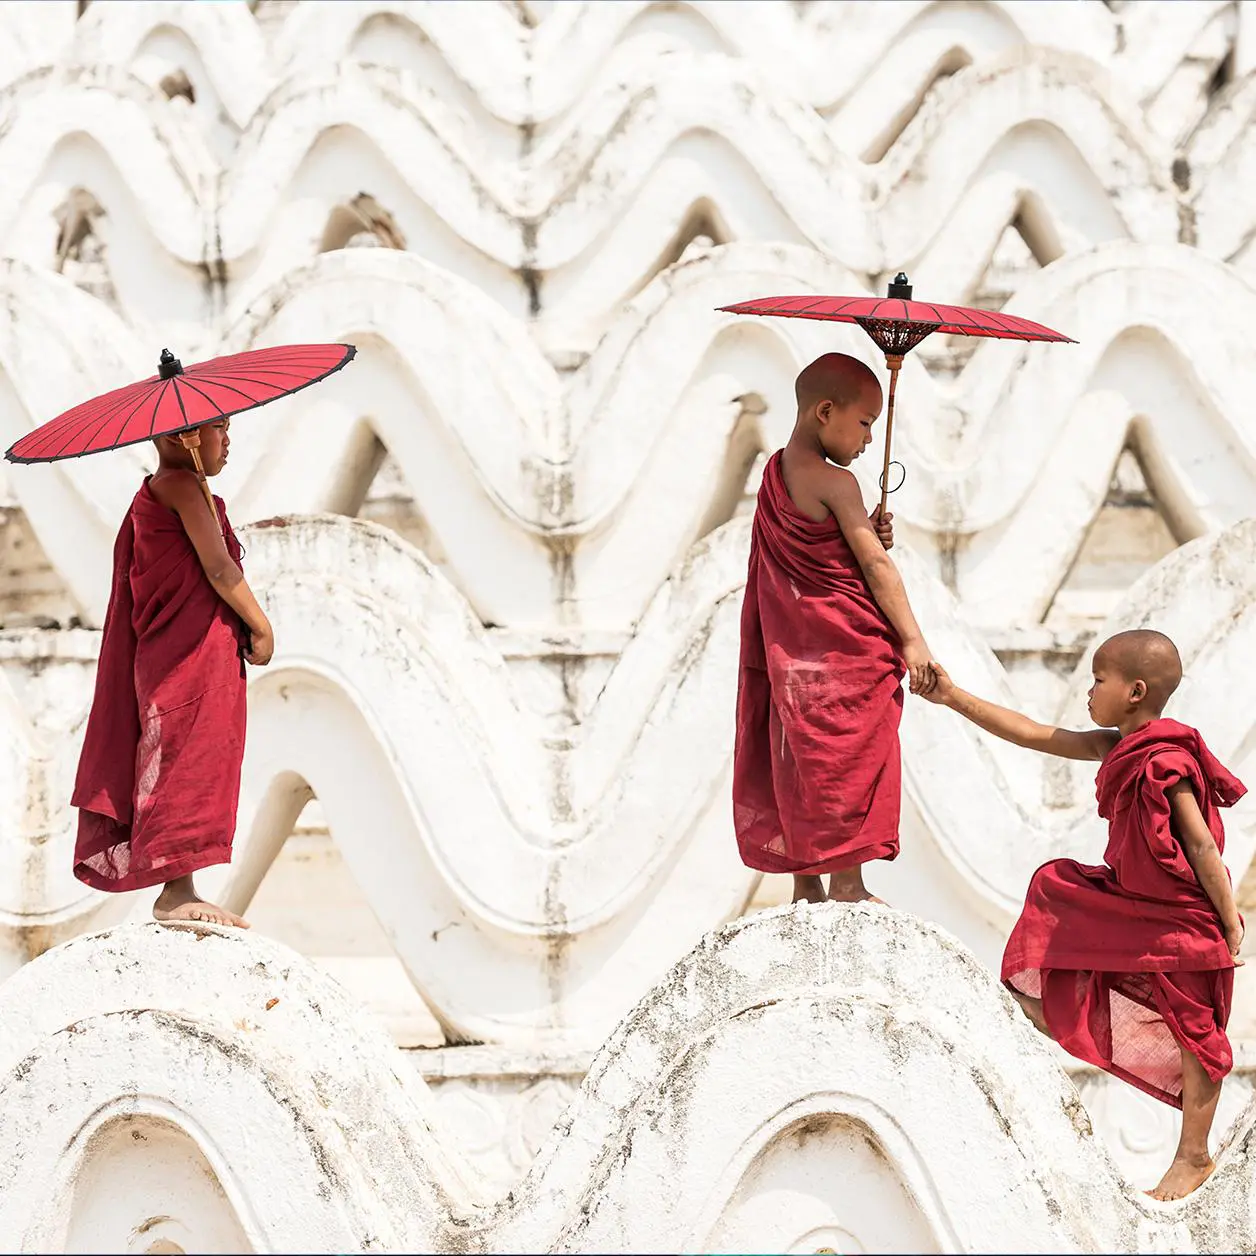 curious monks